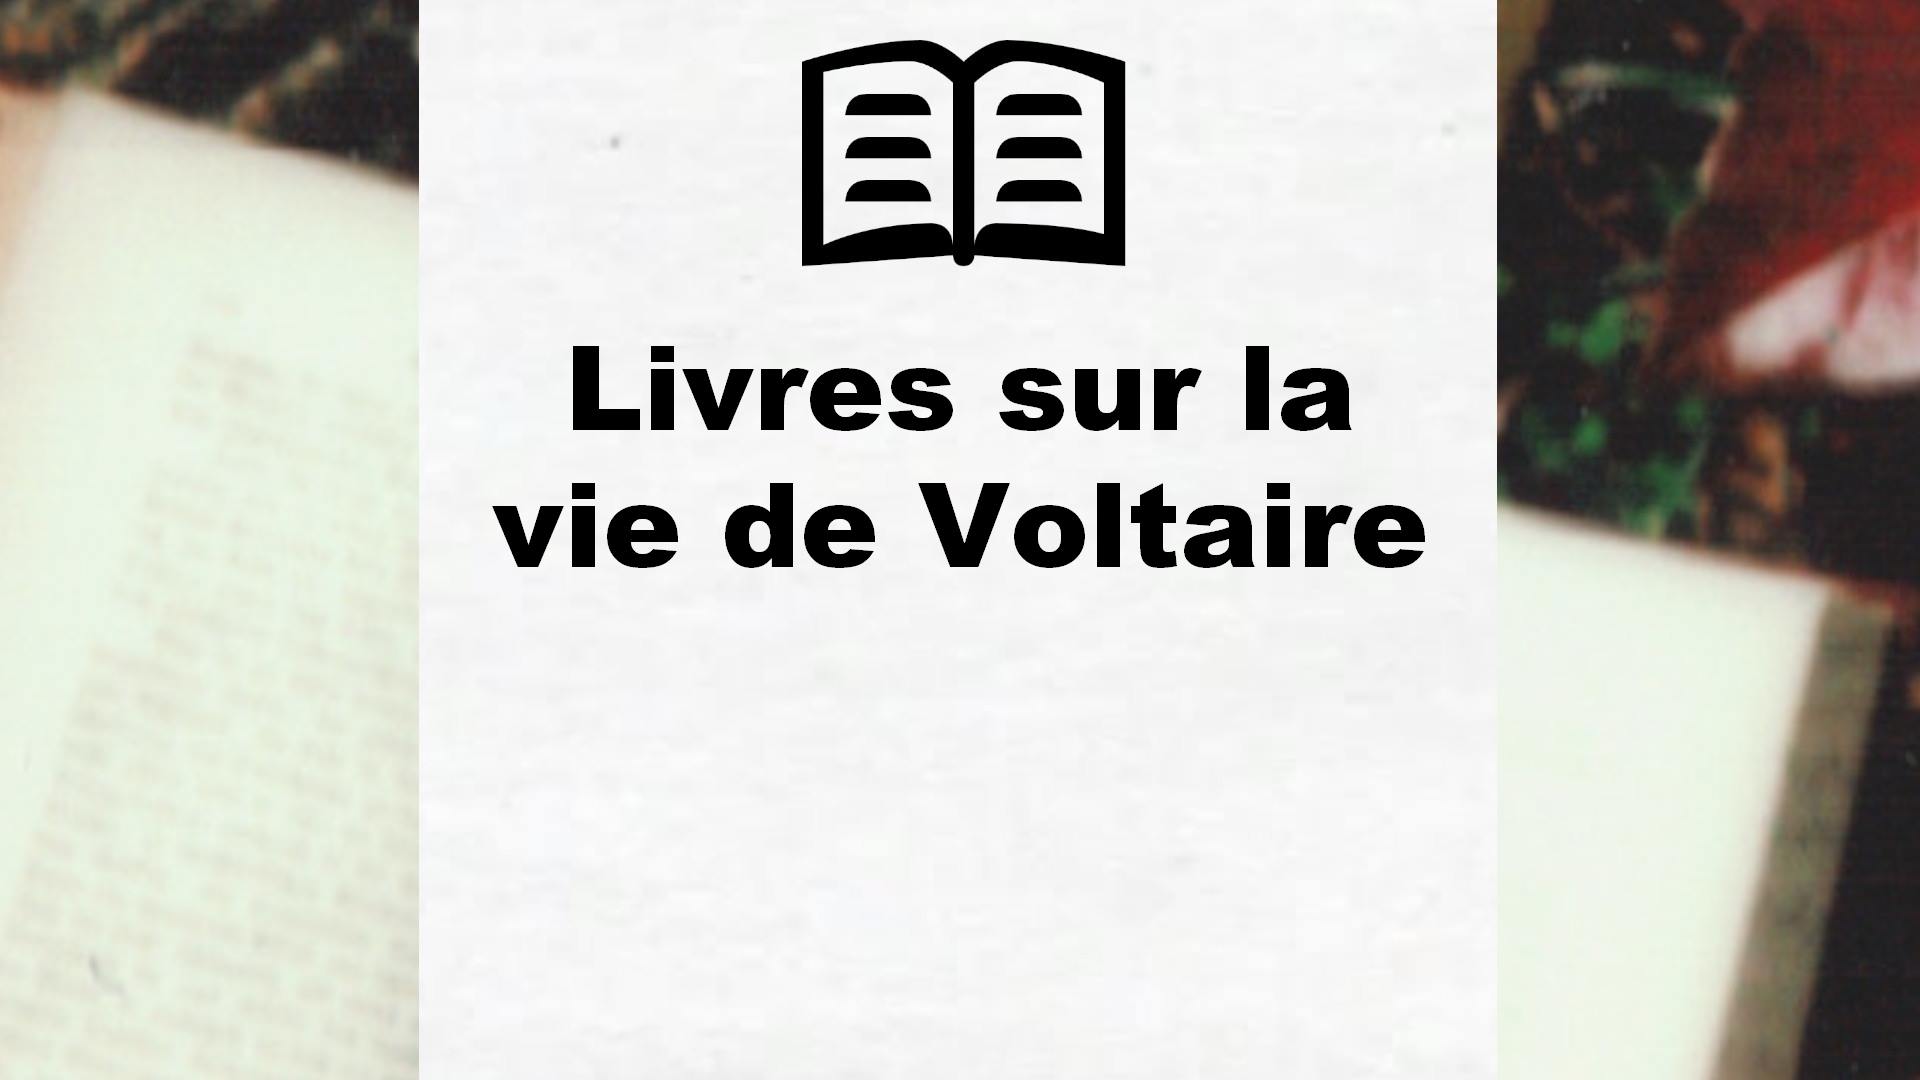 Livres sur la vie de Voltaire